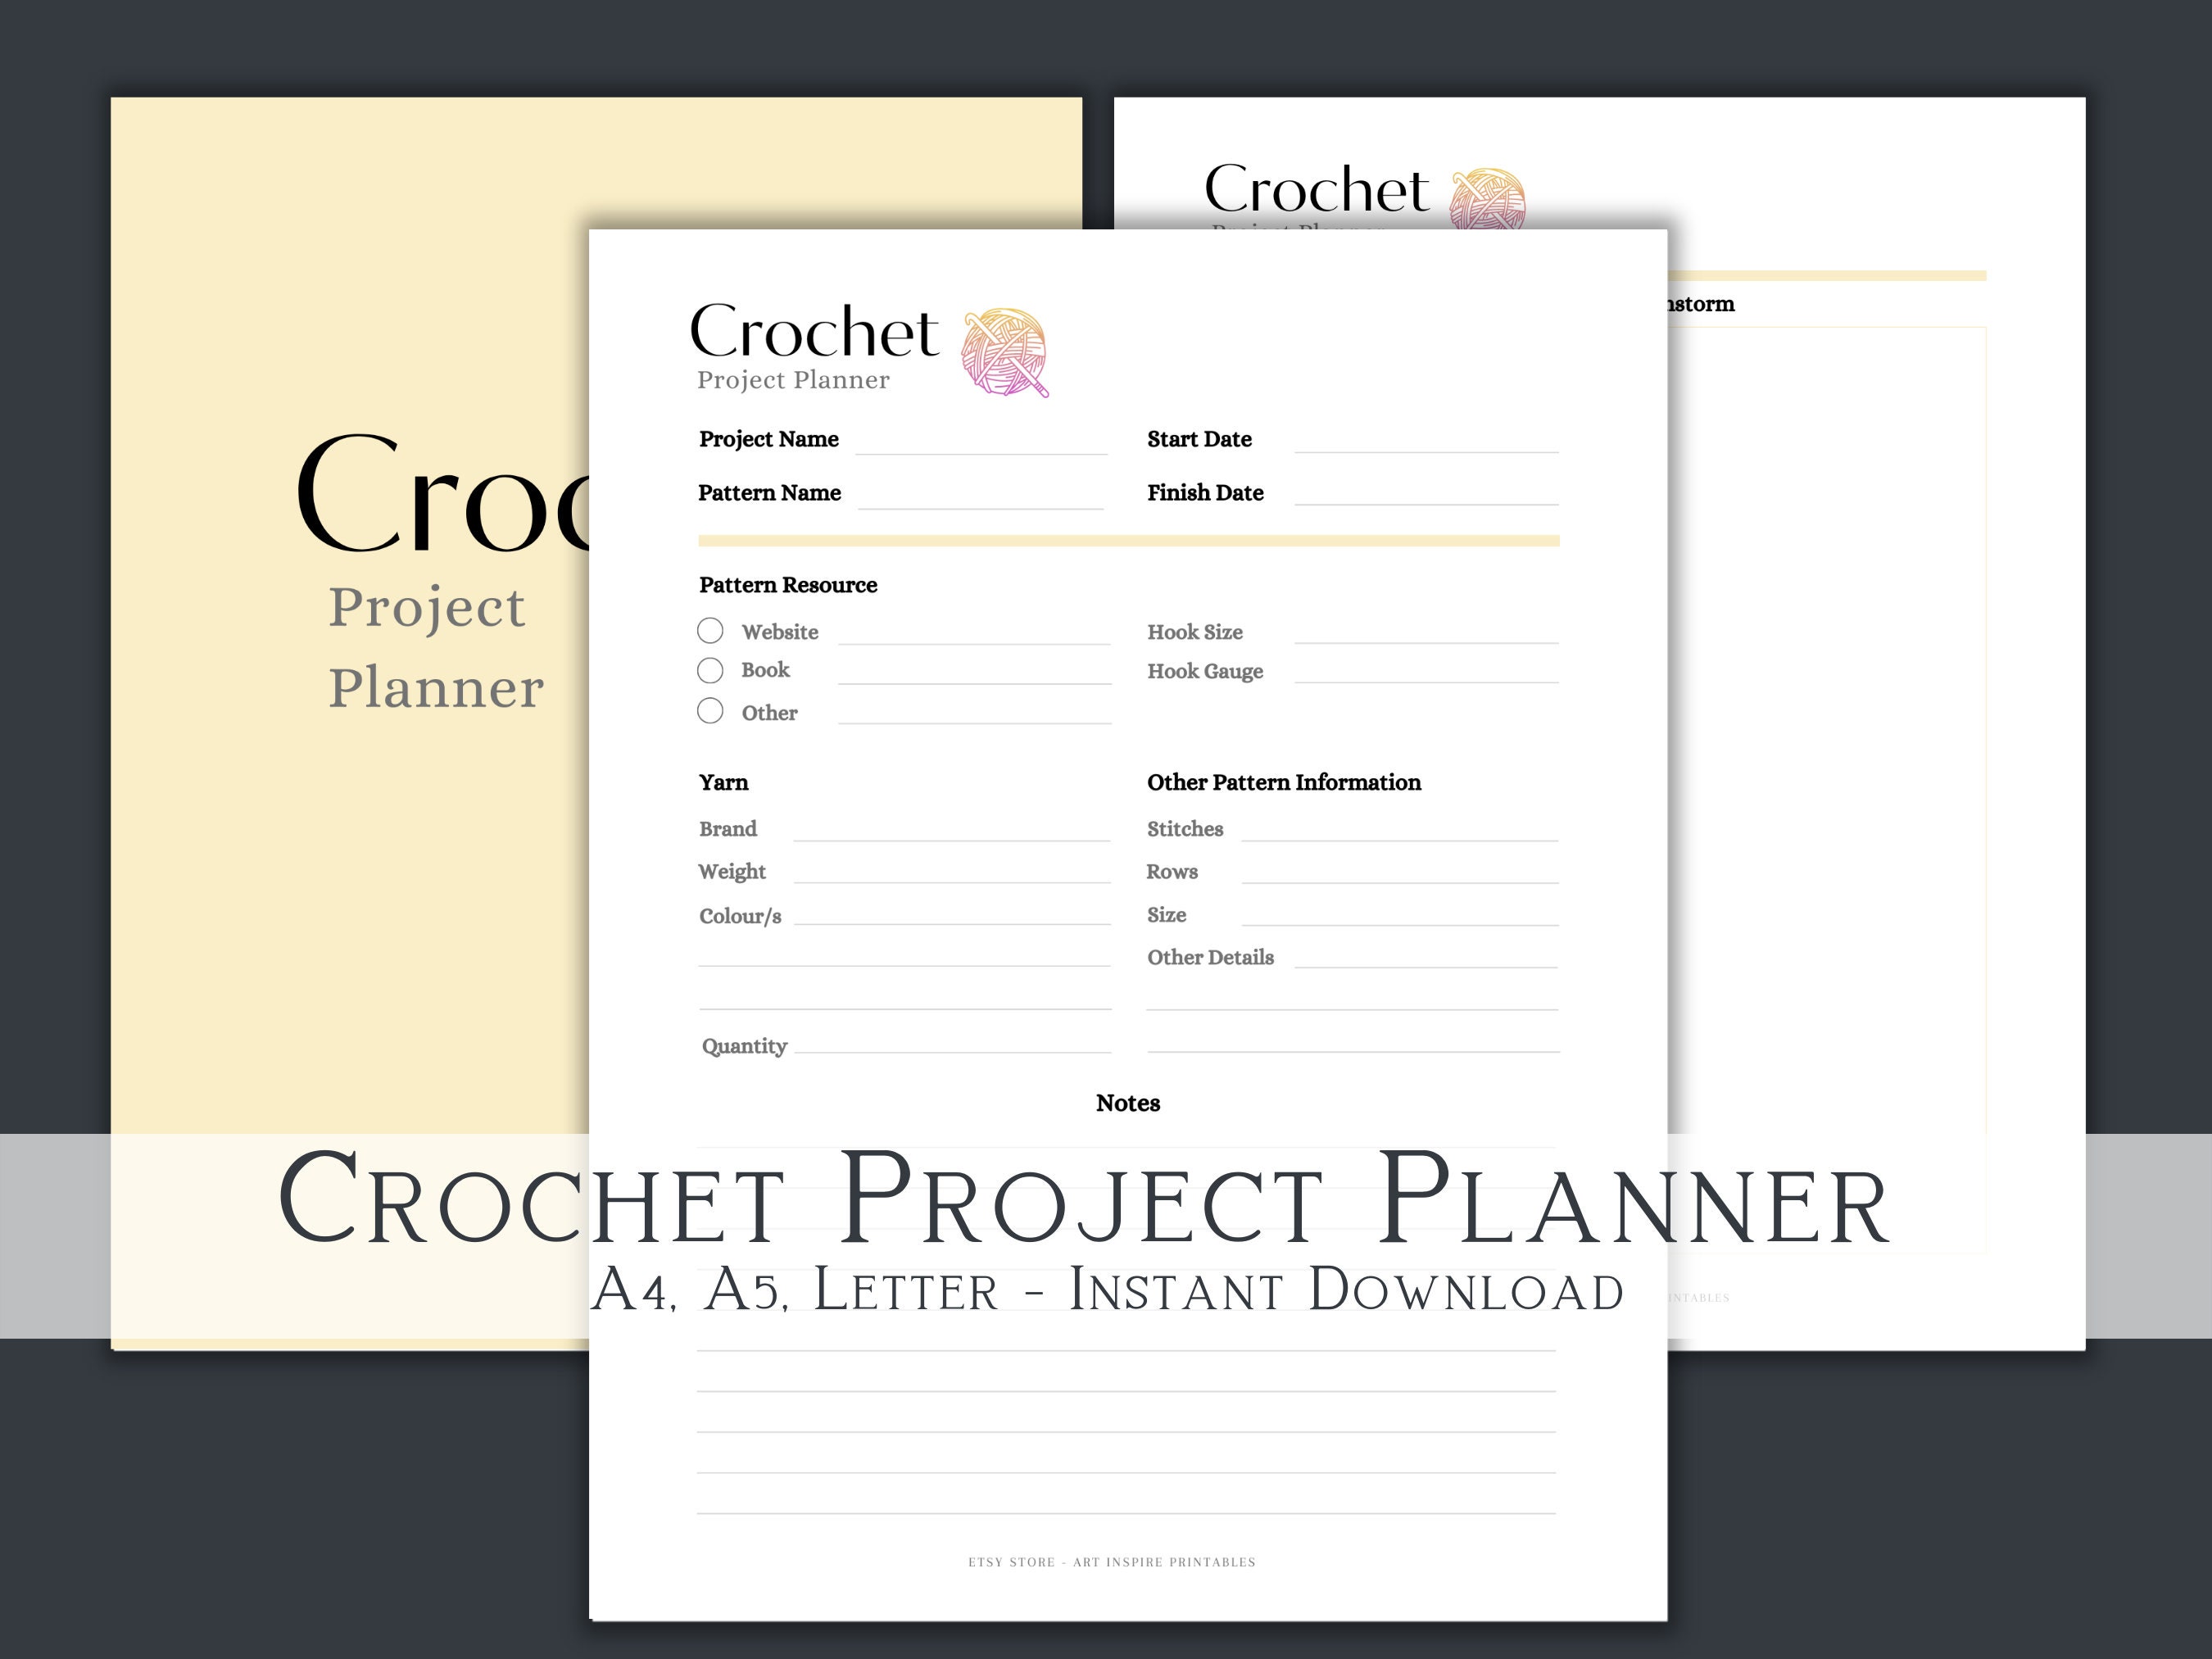 A Crochet Journal: A Journal for Crochet Projects [Book]